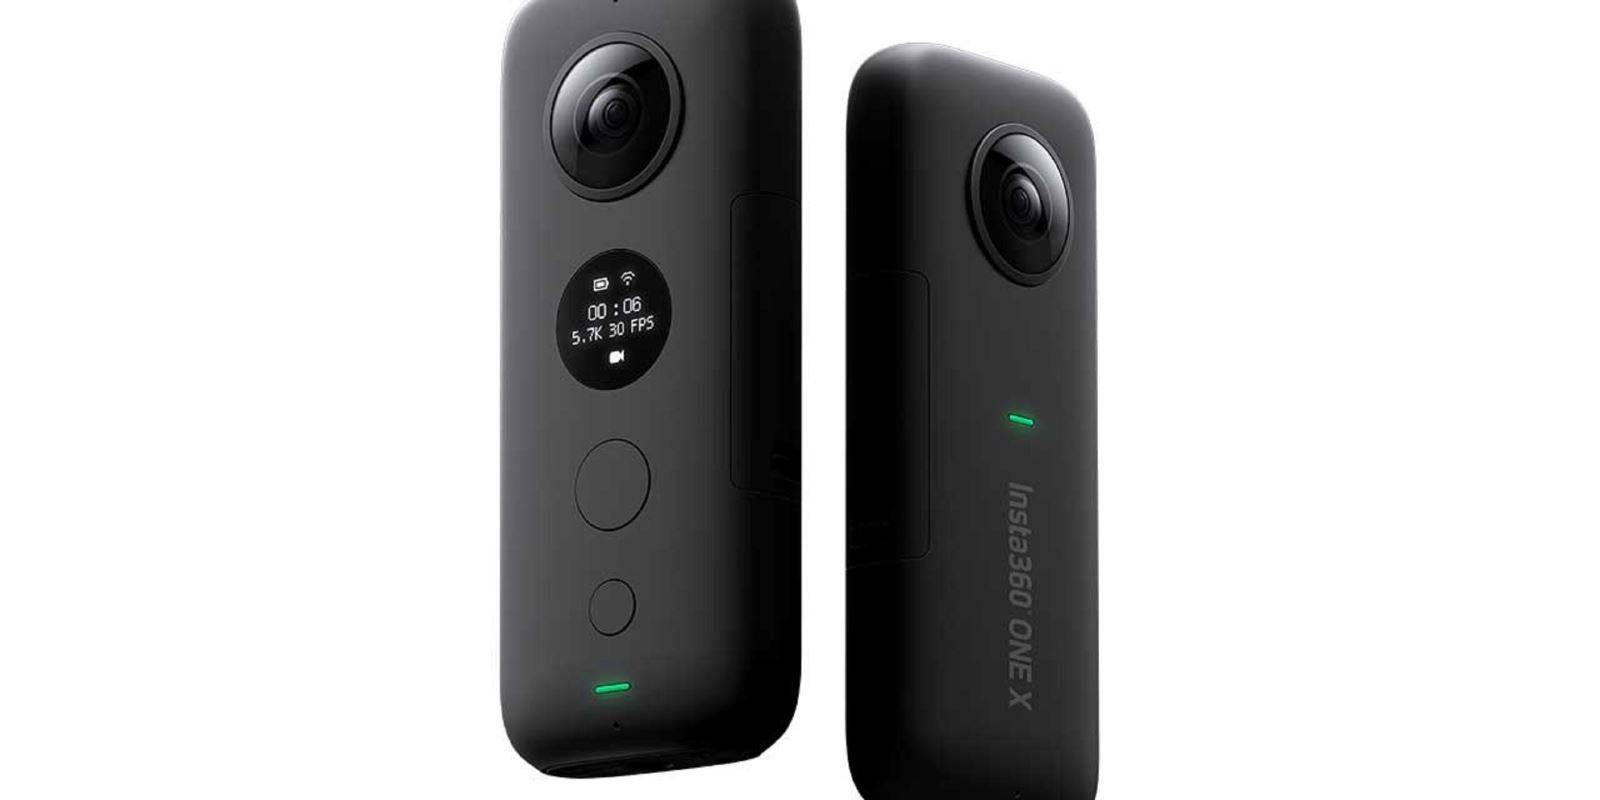 Insta360 ra mắt camera hành động 360 độ 5.7K